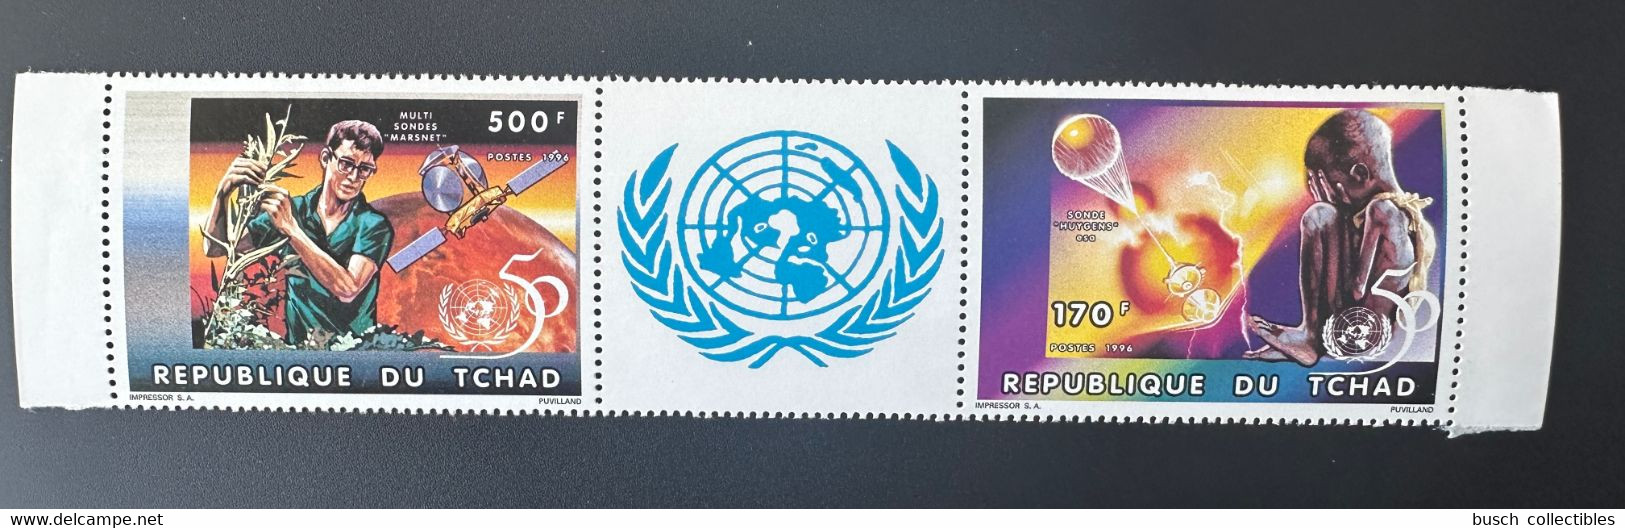 Tchad Chad Tschad 1996 Mi. 1357a - 1358a A United Nations Unies Vereinte Nationen UNO ONU UN 50 Ans Jahre Years - VN